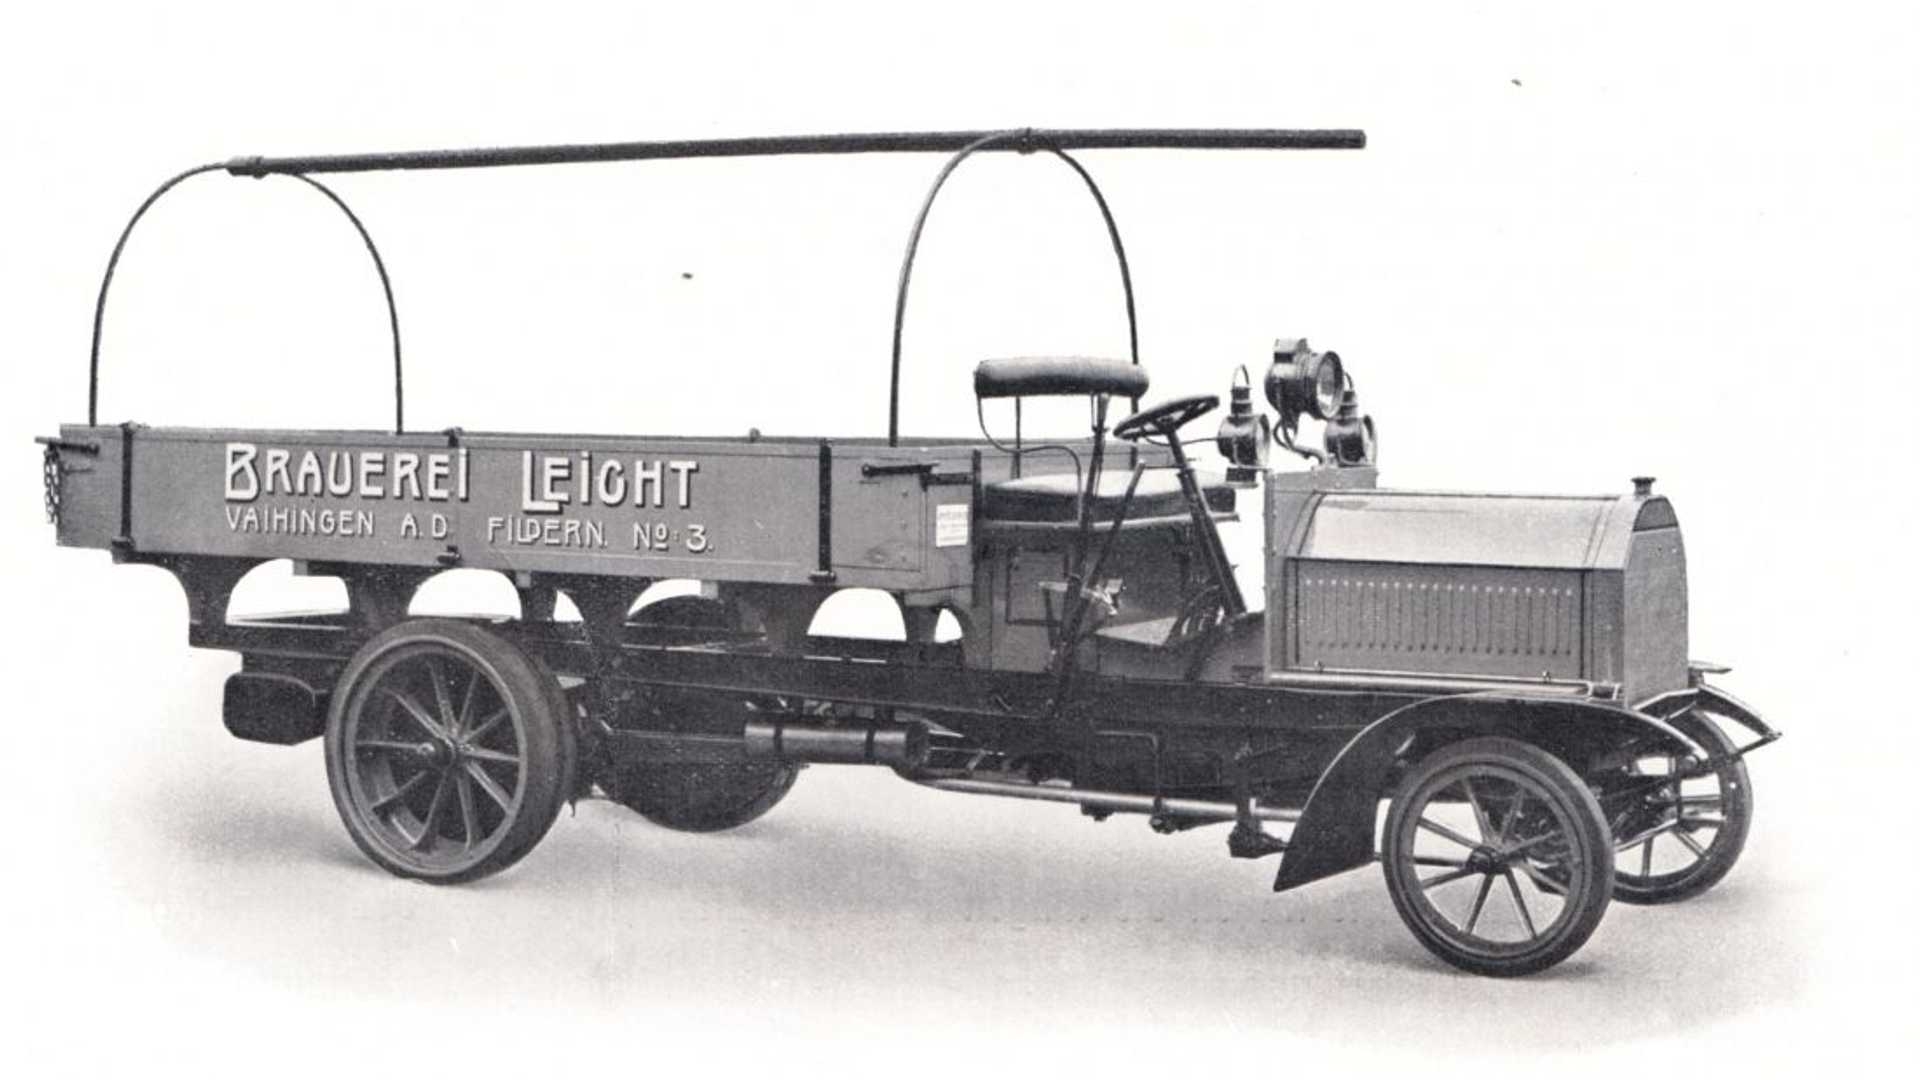 Daimler primo camion 1896